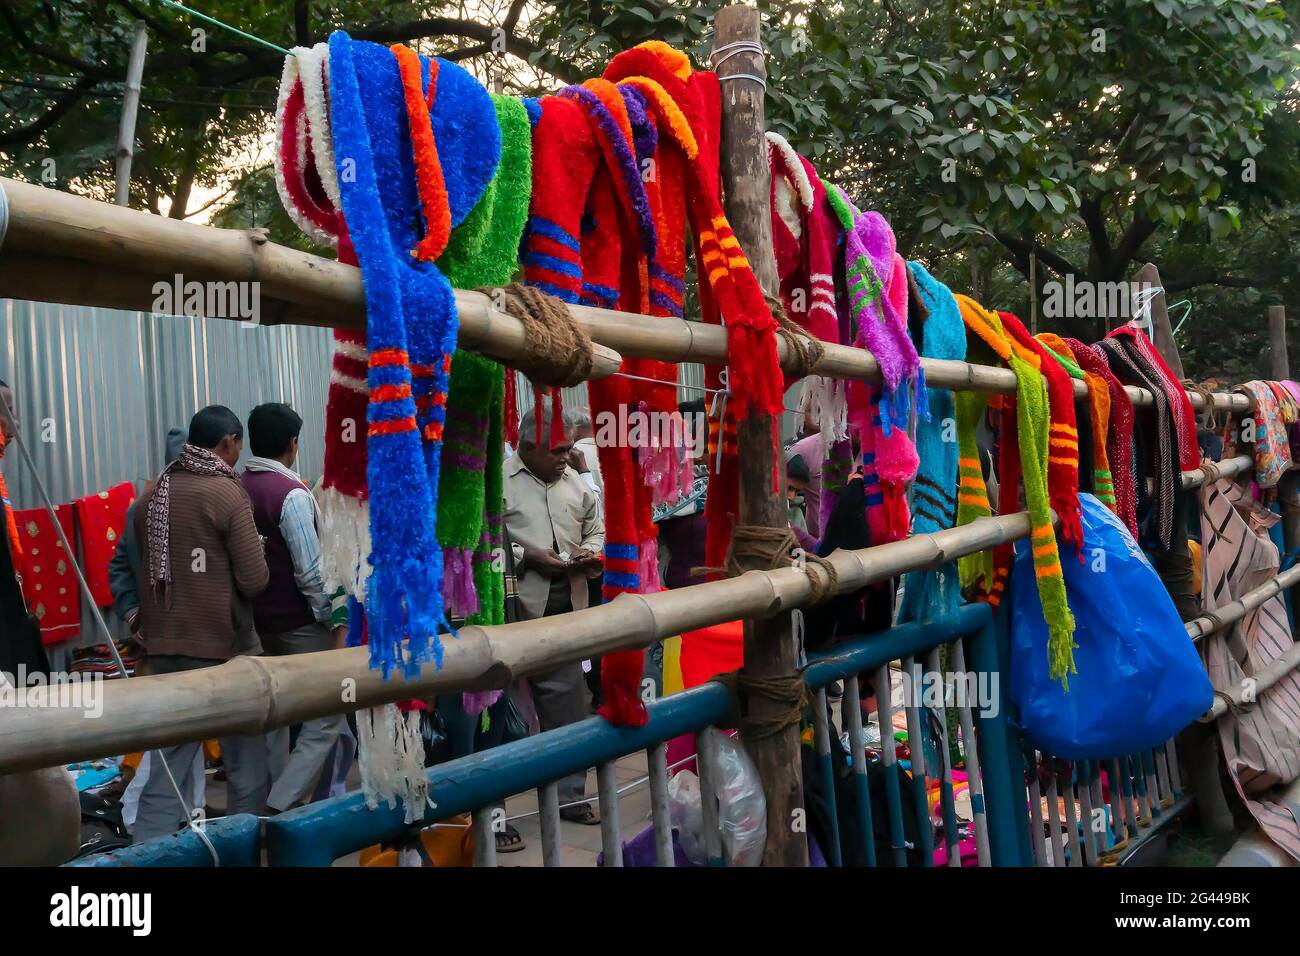 Kolkata, Bengale occidental, Inde - 12 janvier 2020 : des vêtements d'hiver chauds et colorés sont vendus au camp de transit de Gangasagar, Babughat, Kolkata Banque D'Images